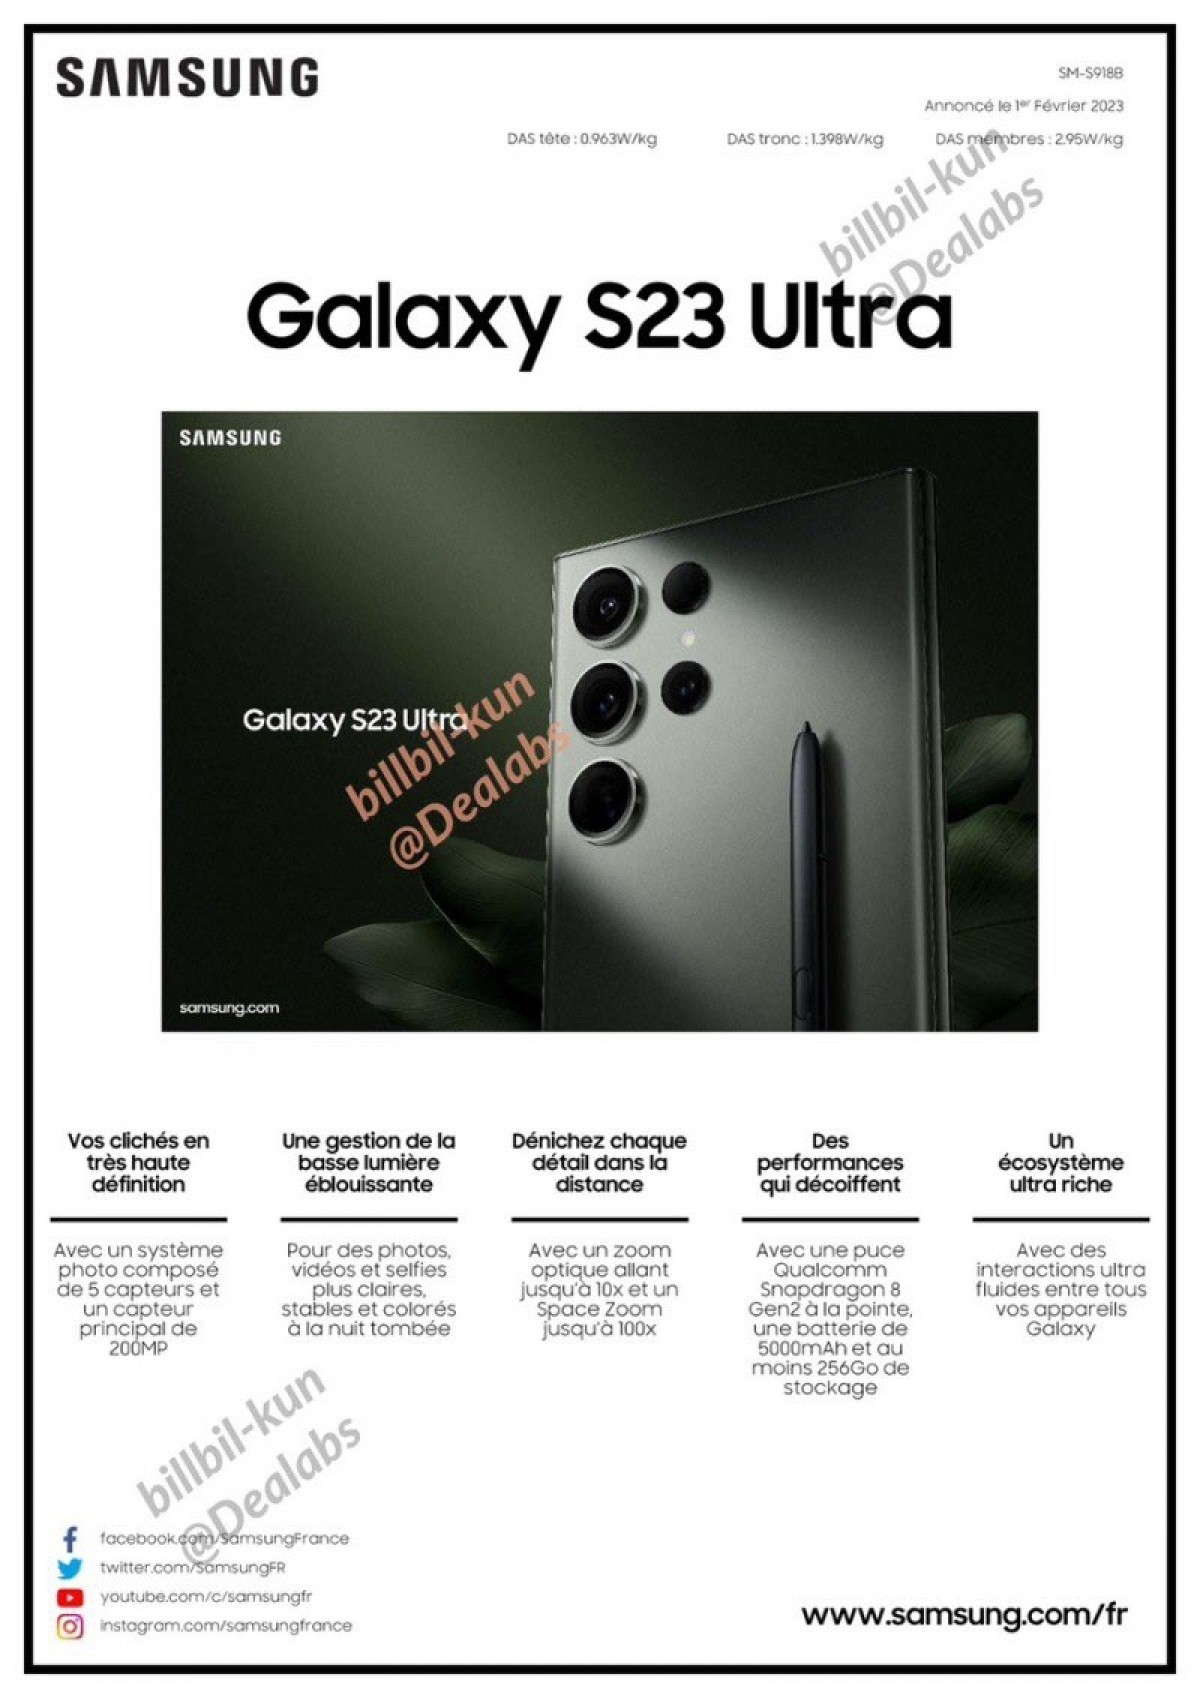 Samsung Galaxy S23 Ultra specs sheet leaks in full